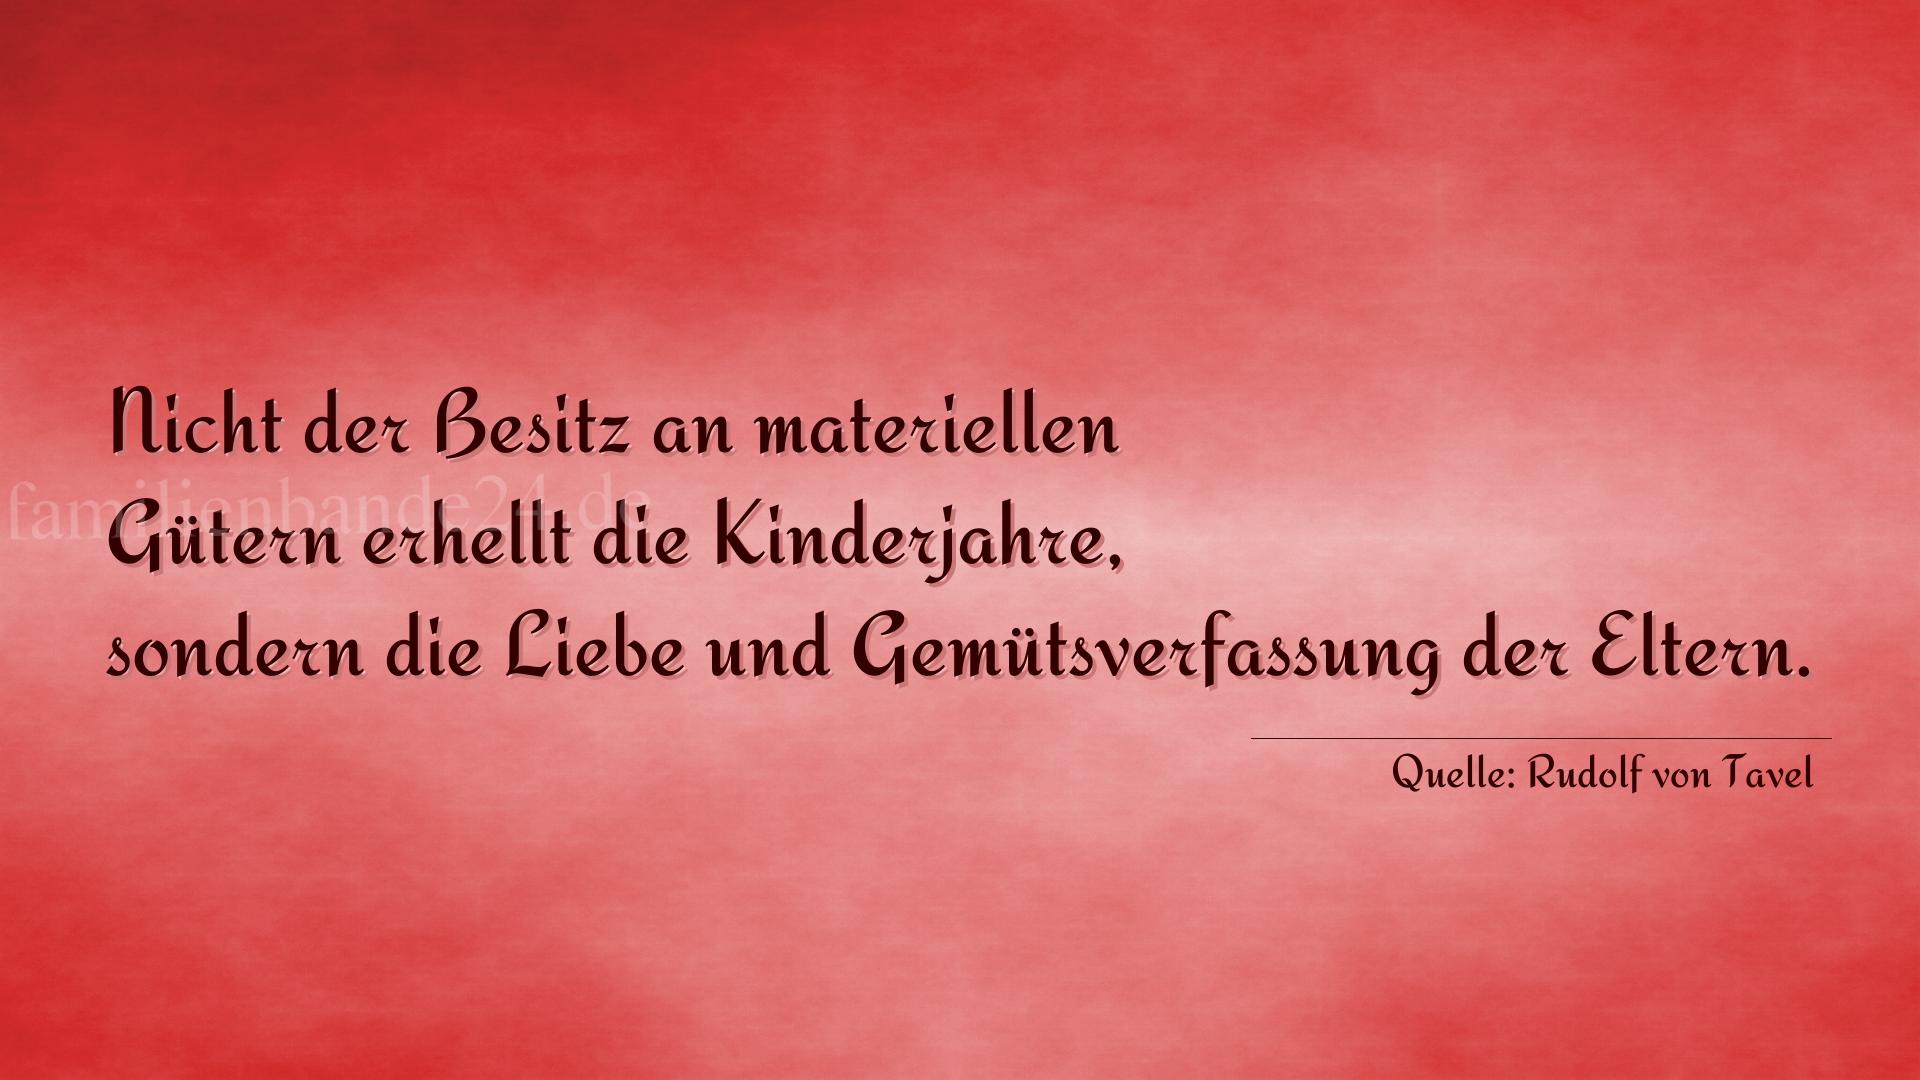 Thumbnail  zu Bild von Spruch  Nr. 341  (von Rudolf von Tavel)